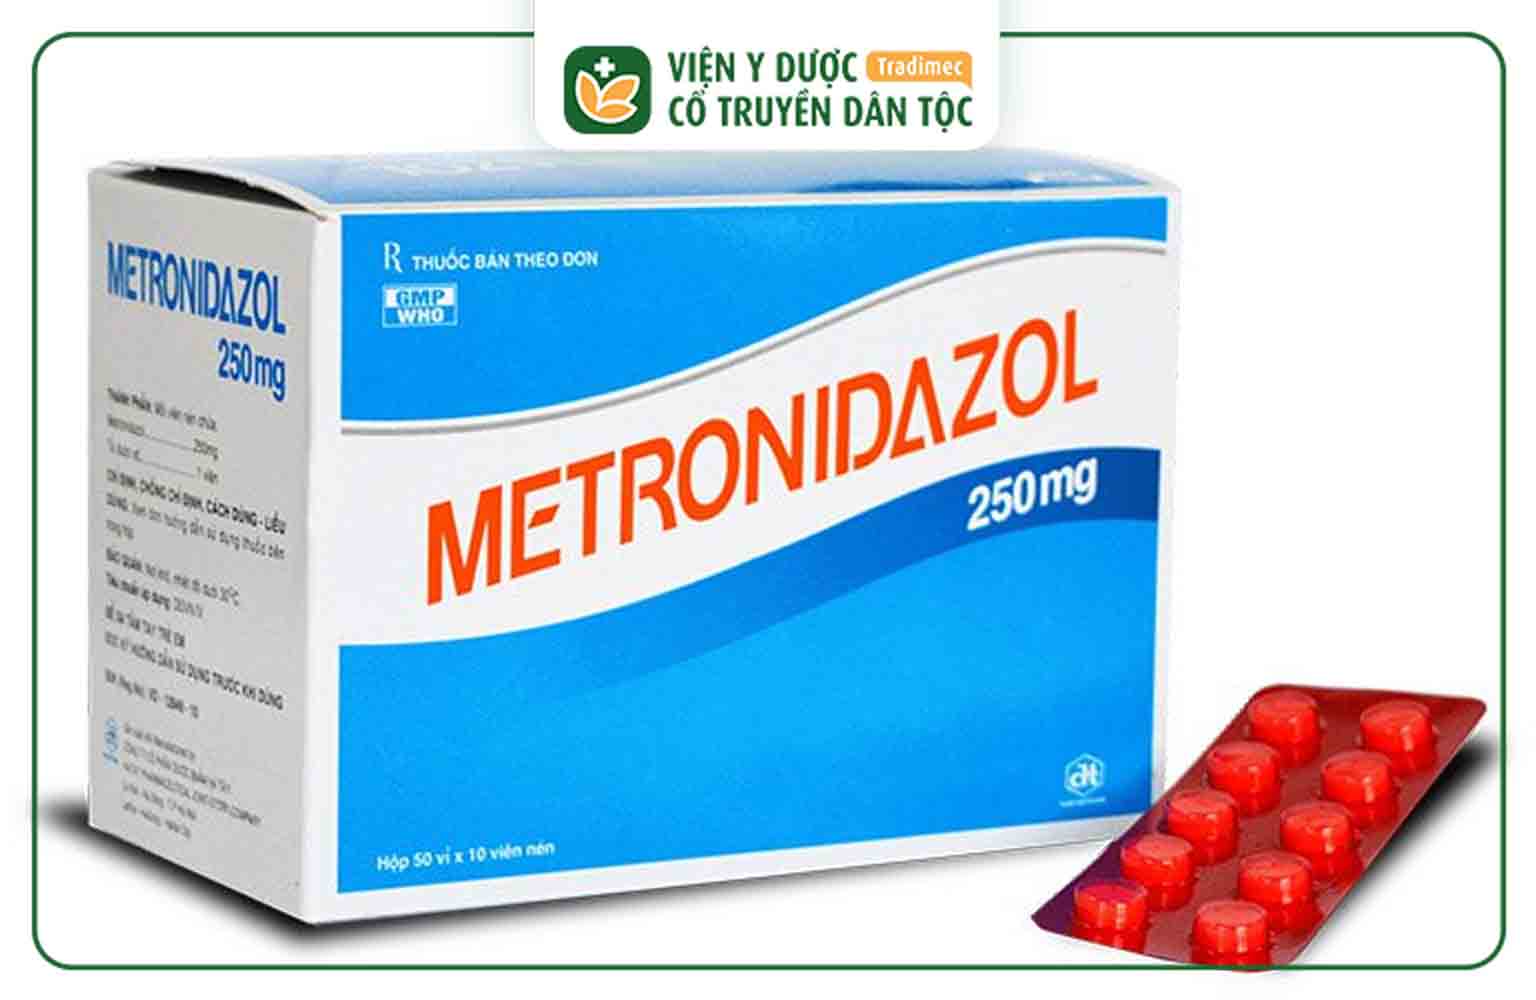 Metronidazole là thuốc kháng sinh có tác dụng kháng khuẩn, kháng nấm